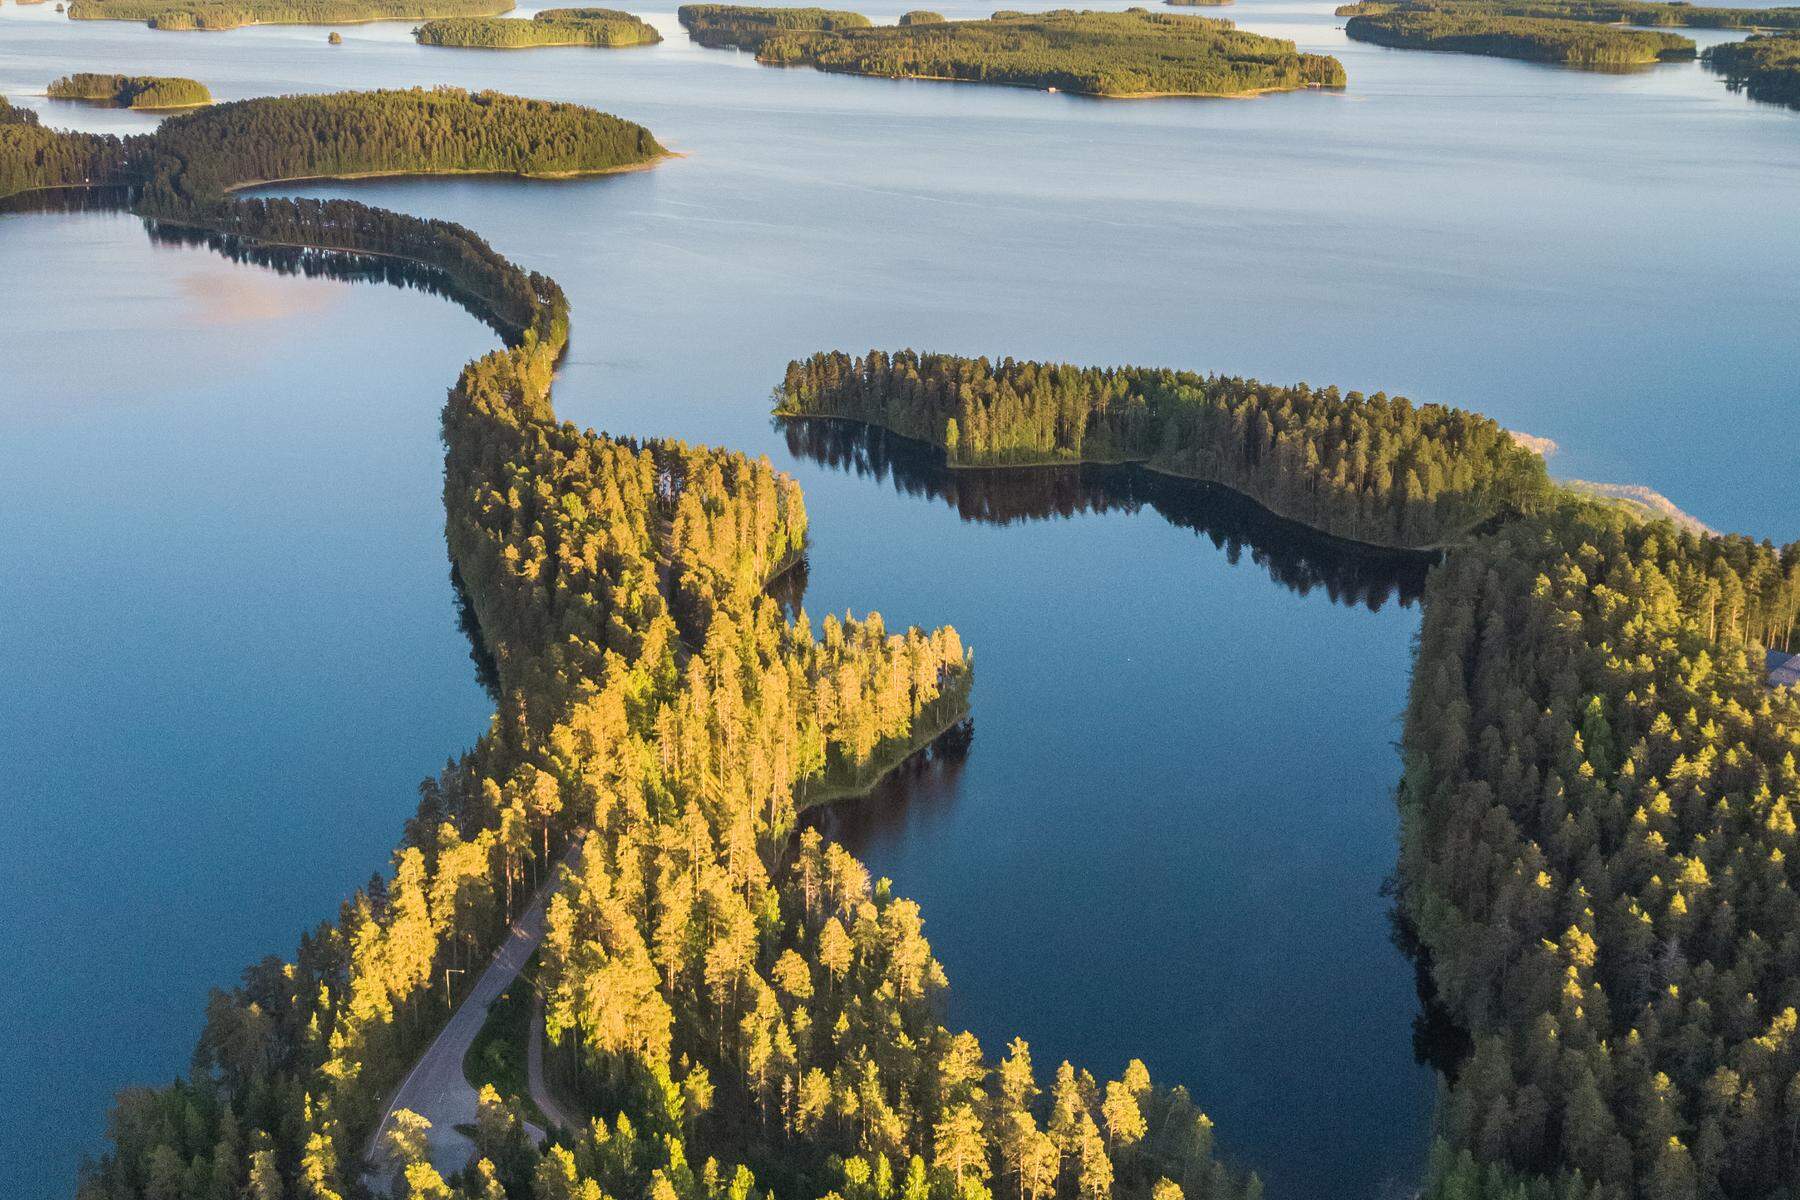 Finnland für Feinschmecker: Kulinarischer Genuss am unendlichen See